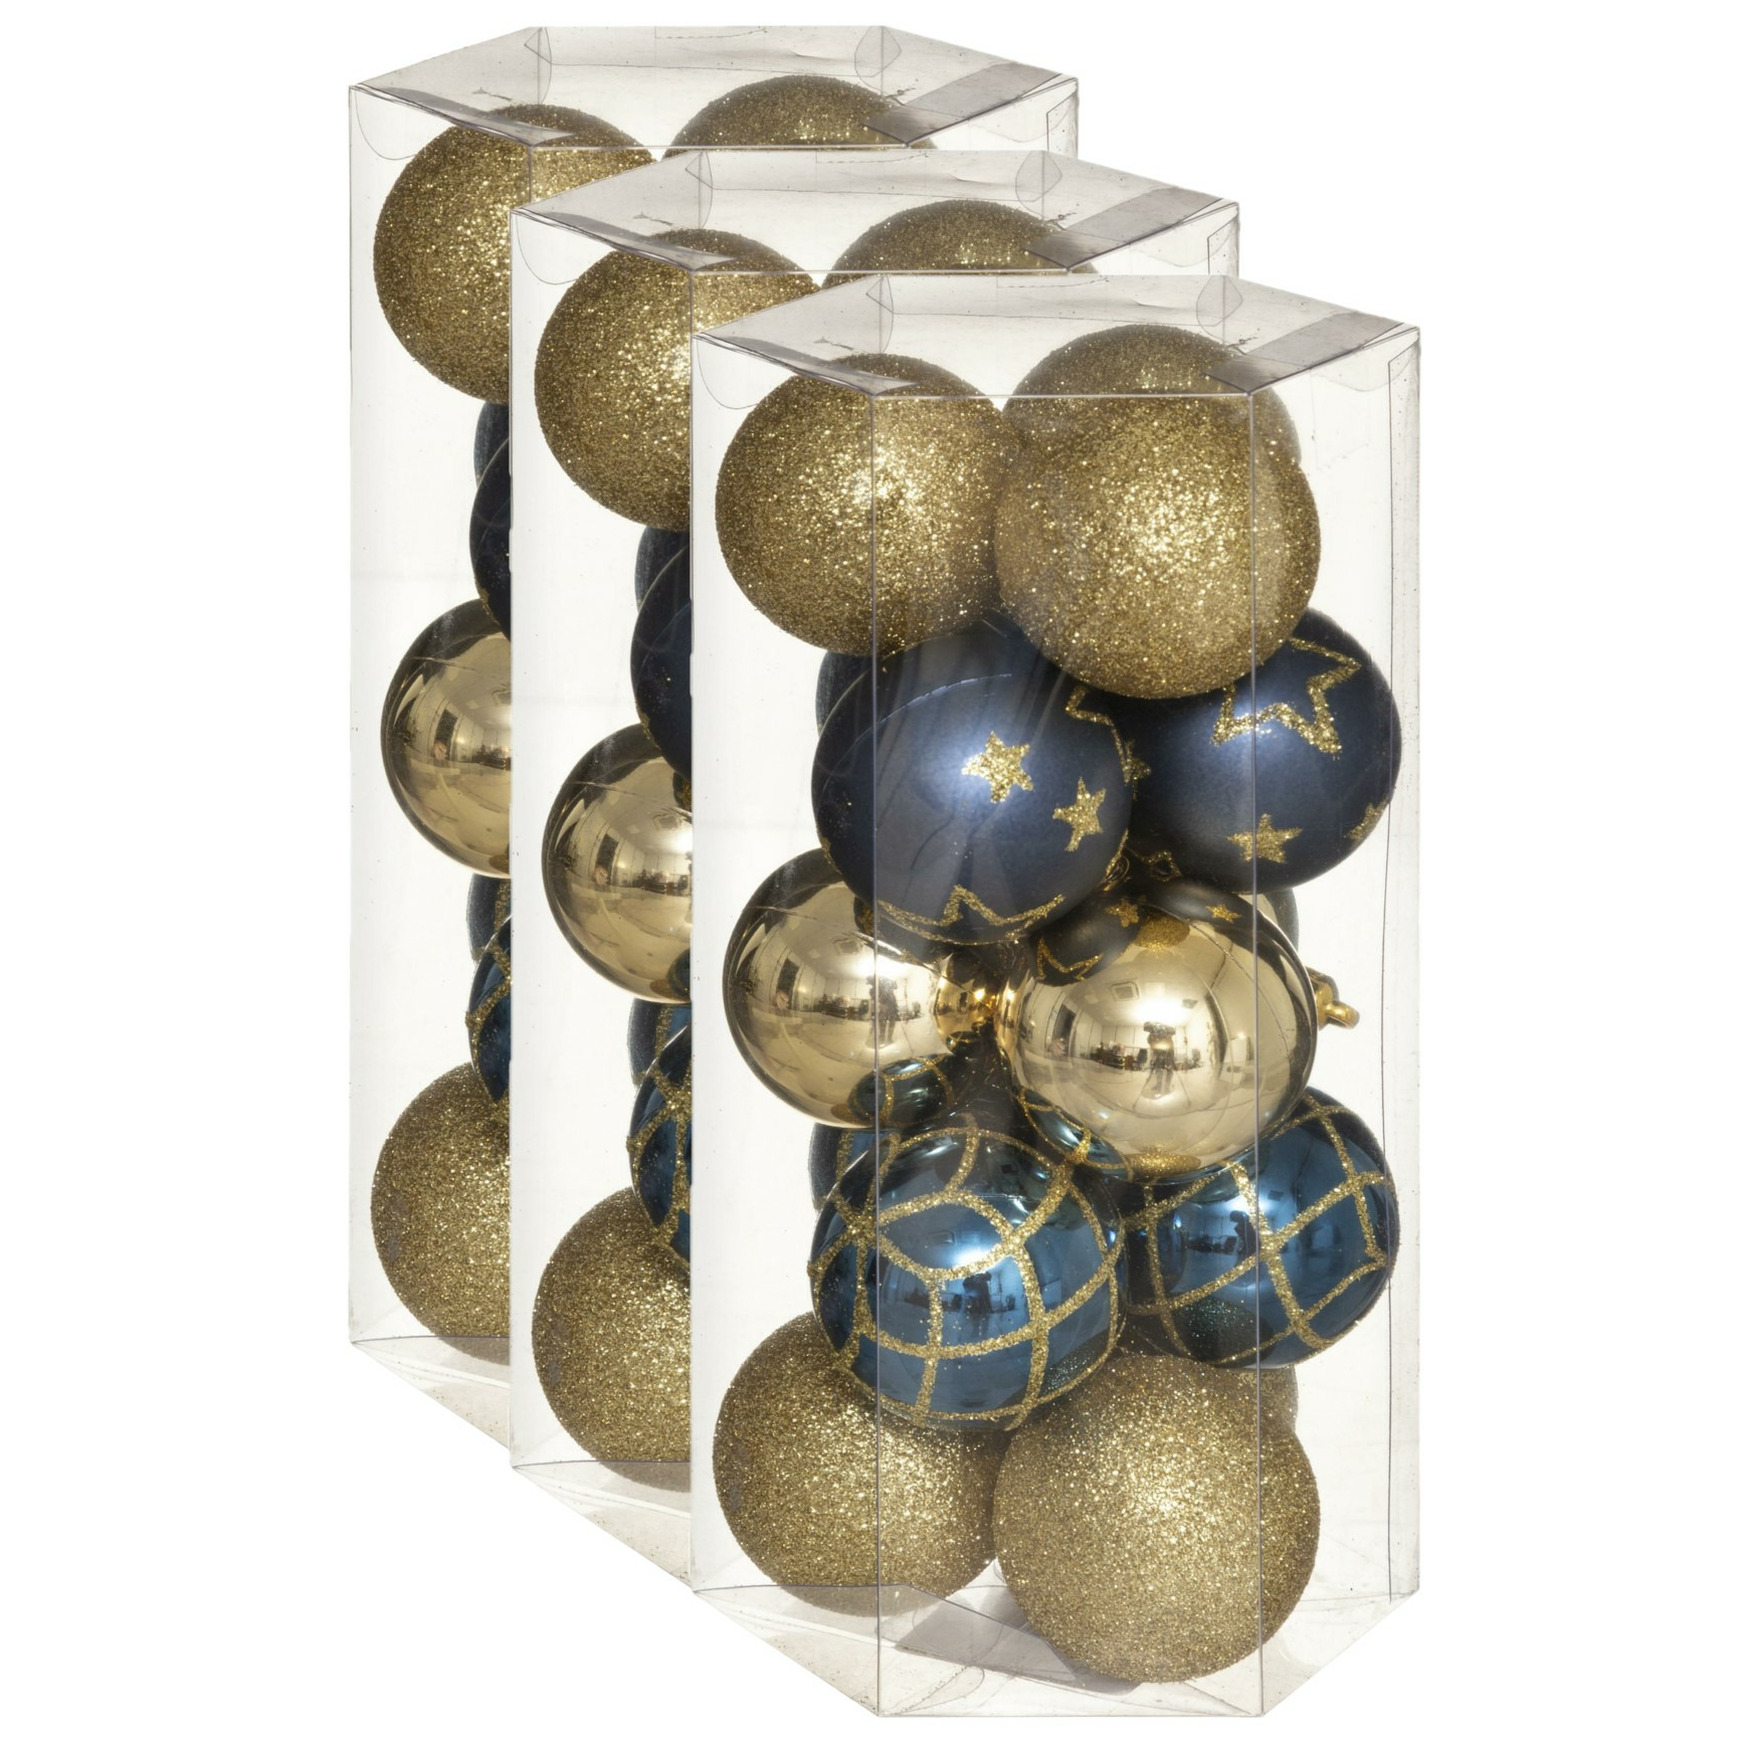 45x stuks kerstballen mix goud-blauw gedecoreerd kunststof 5 cm